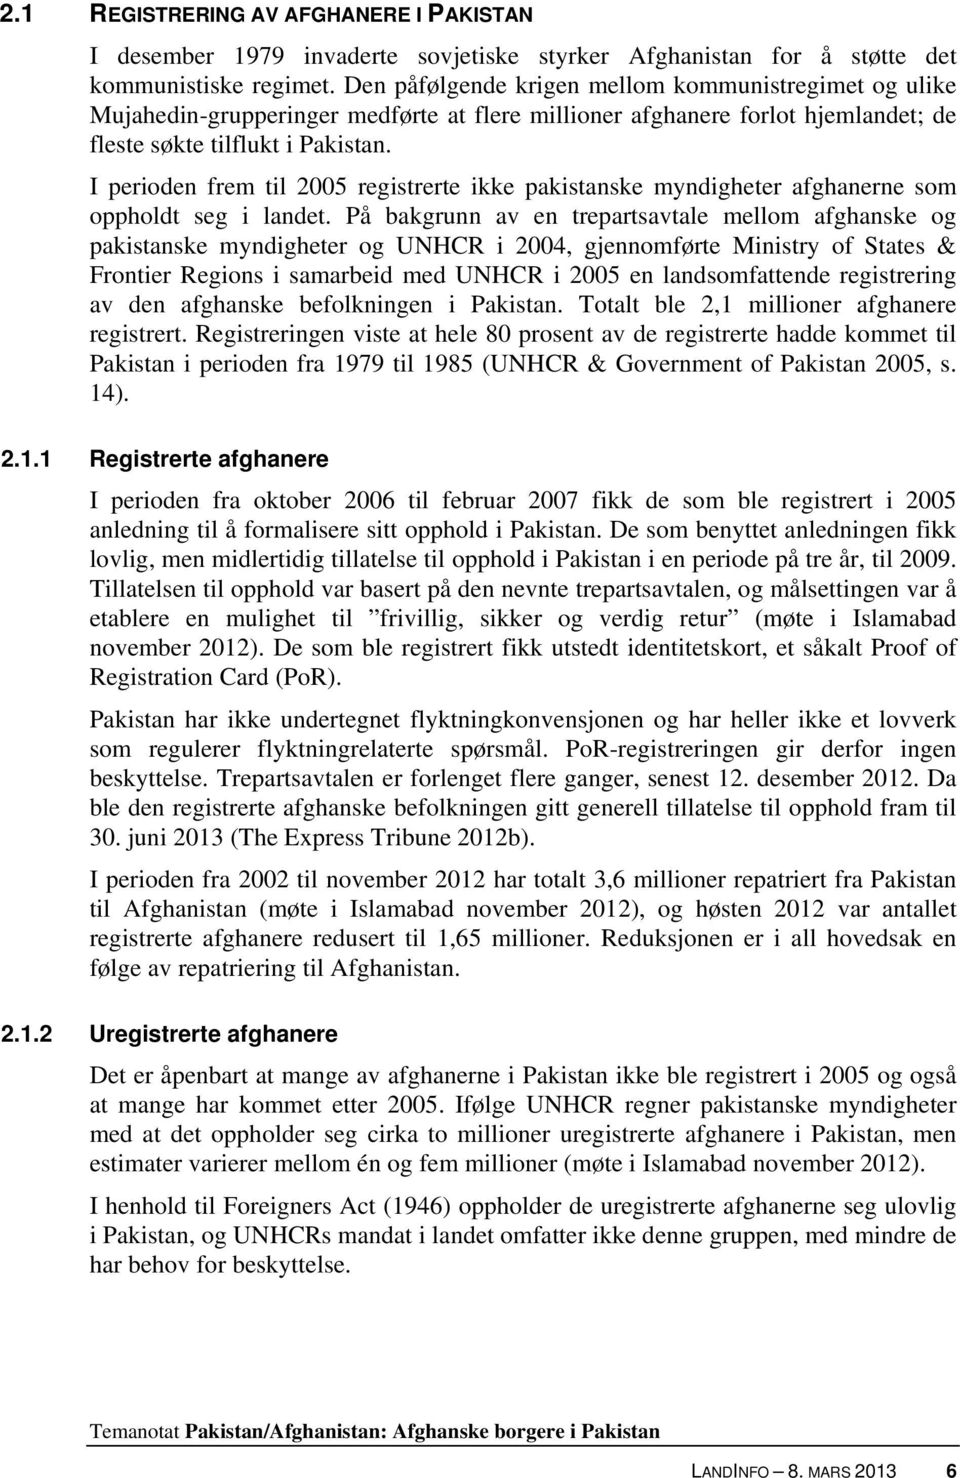 I perioden frem til 2005 registrerte ikke pakistanske myndigheter afghanerne som oppholdt seg i landet.